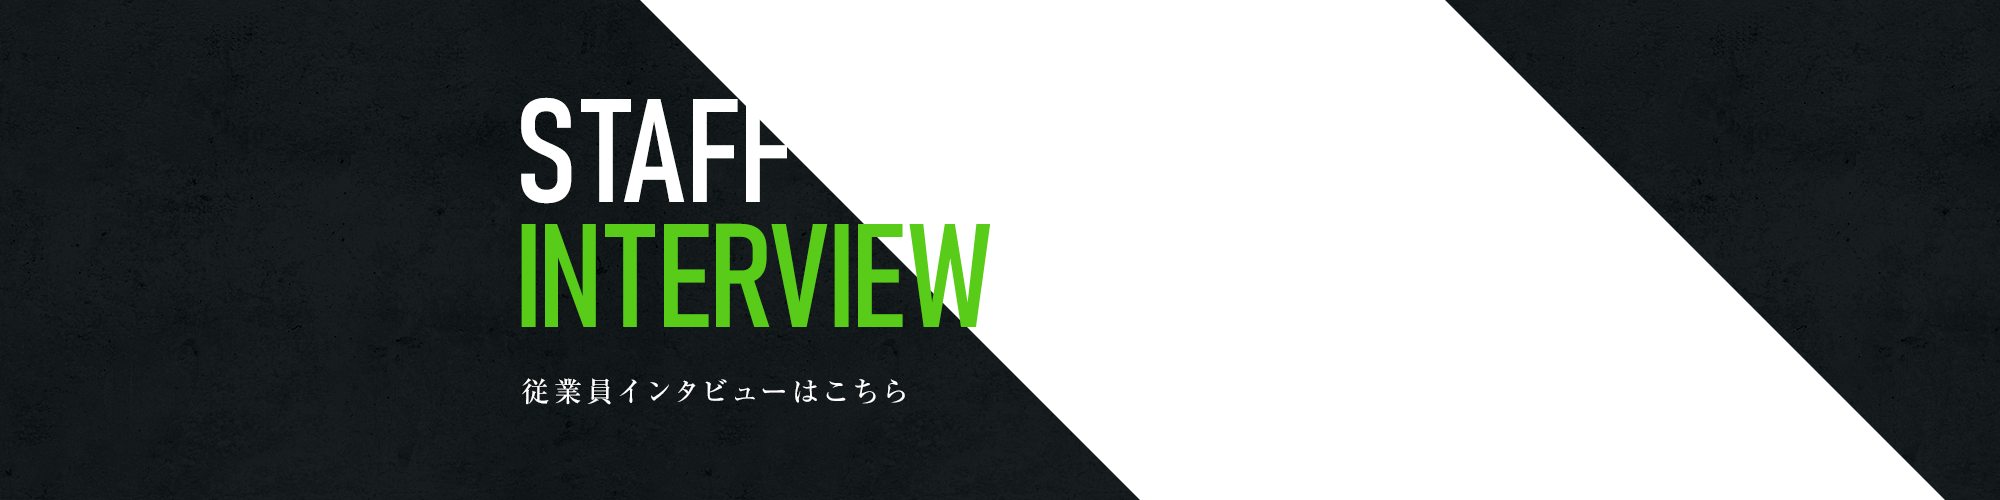 banner_interview_full